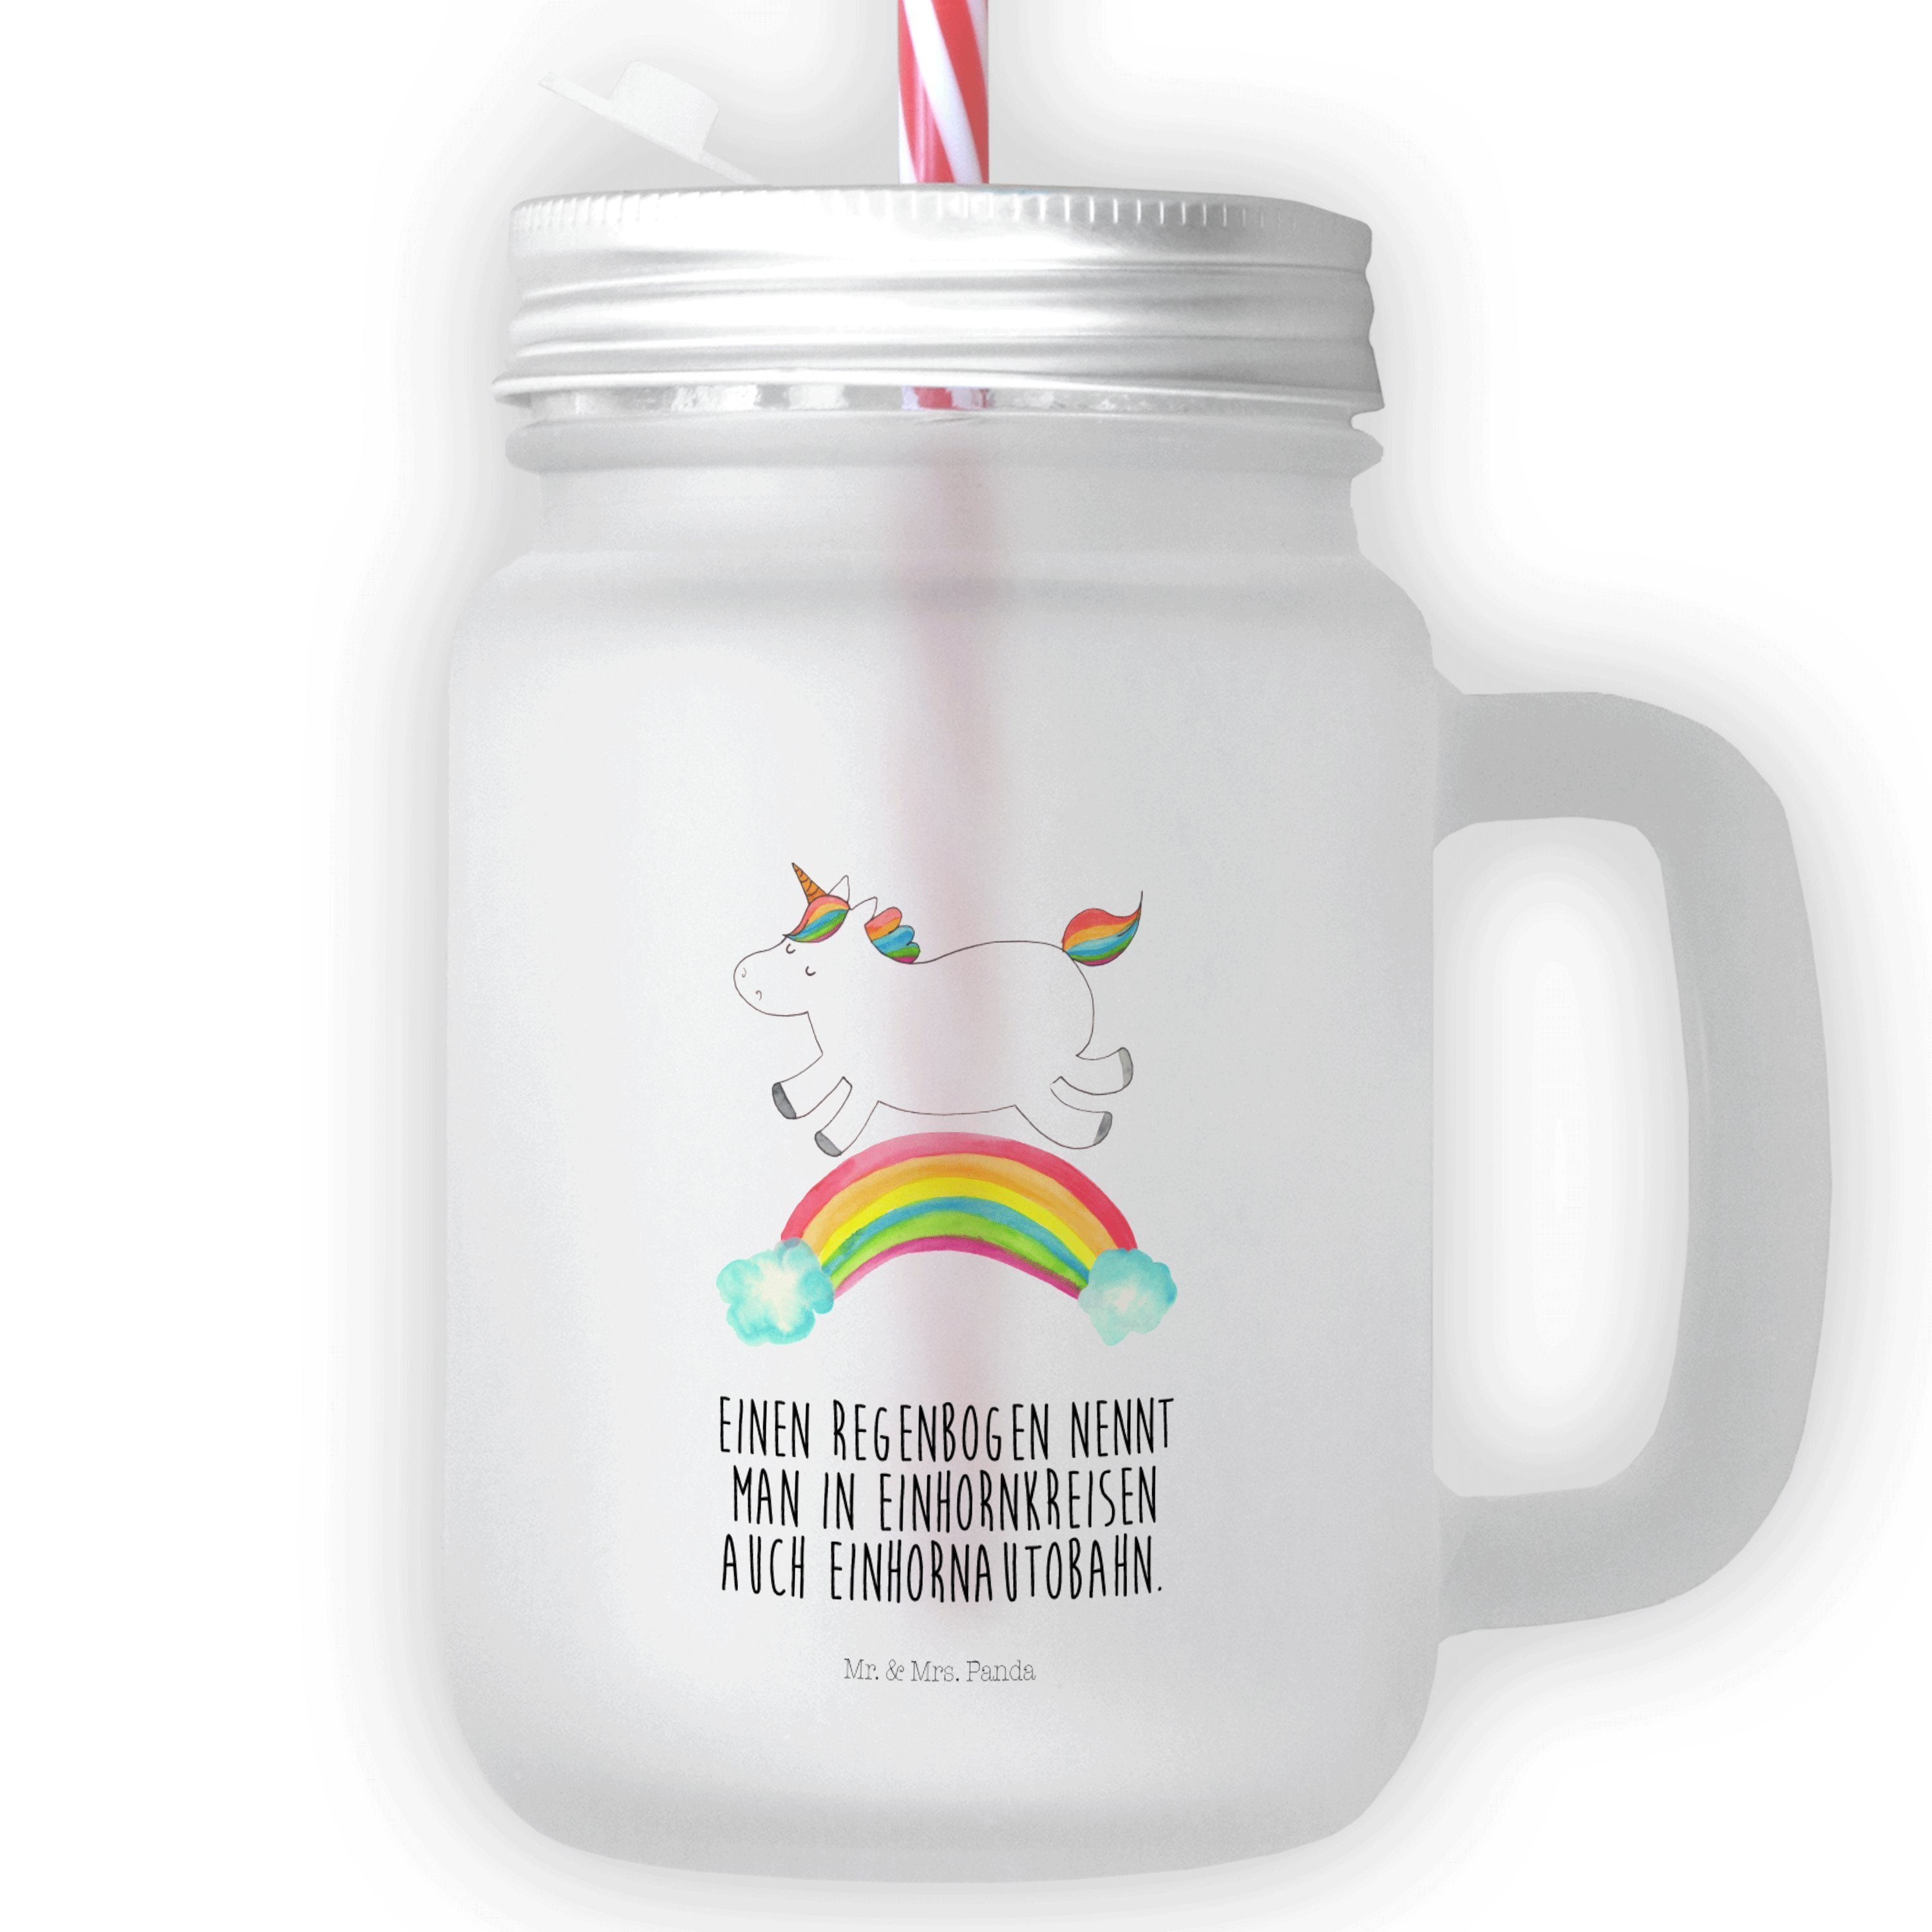 Mr. & Mrs. Panda Glas Einhorn Regenbogen - Transparent - Geschenk, Mason Jar Trinkglas, Gla, Premium Glas